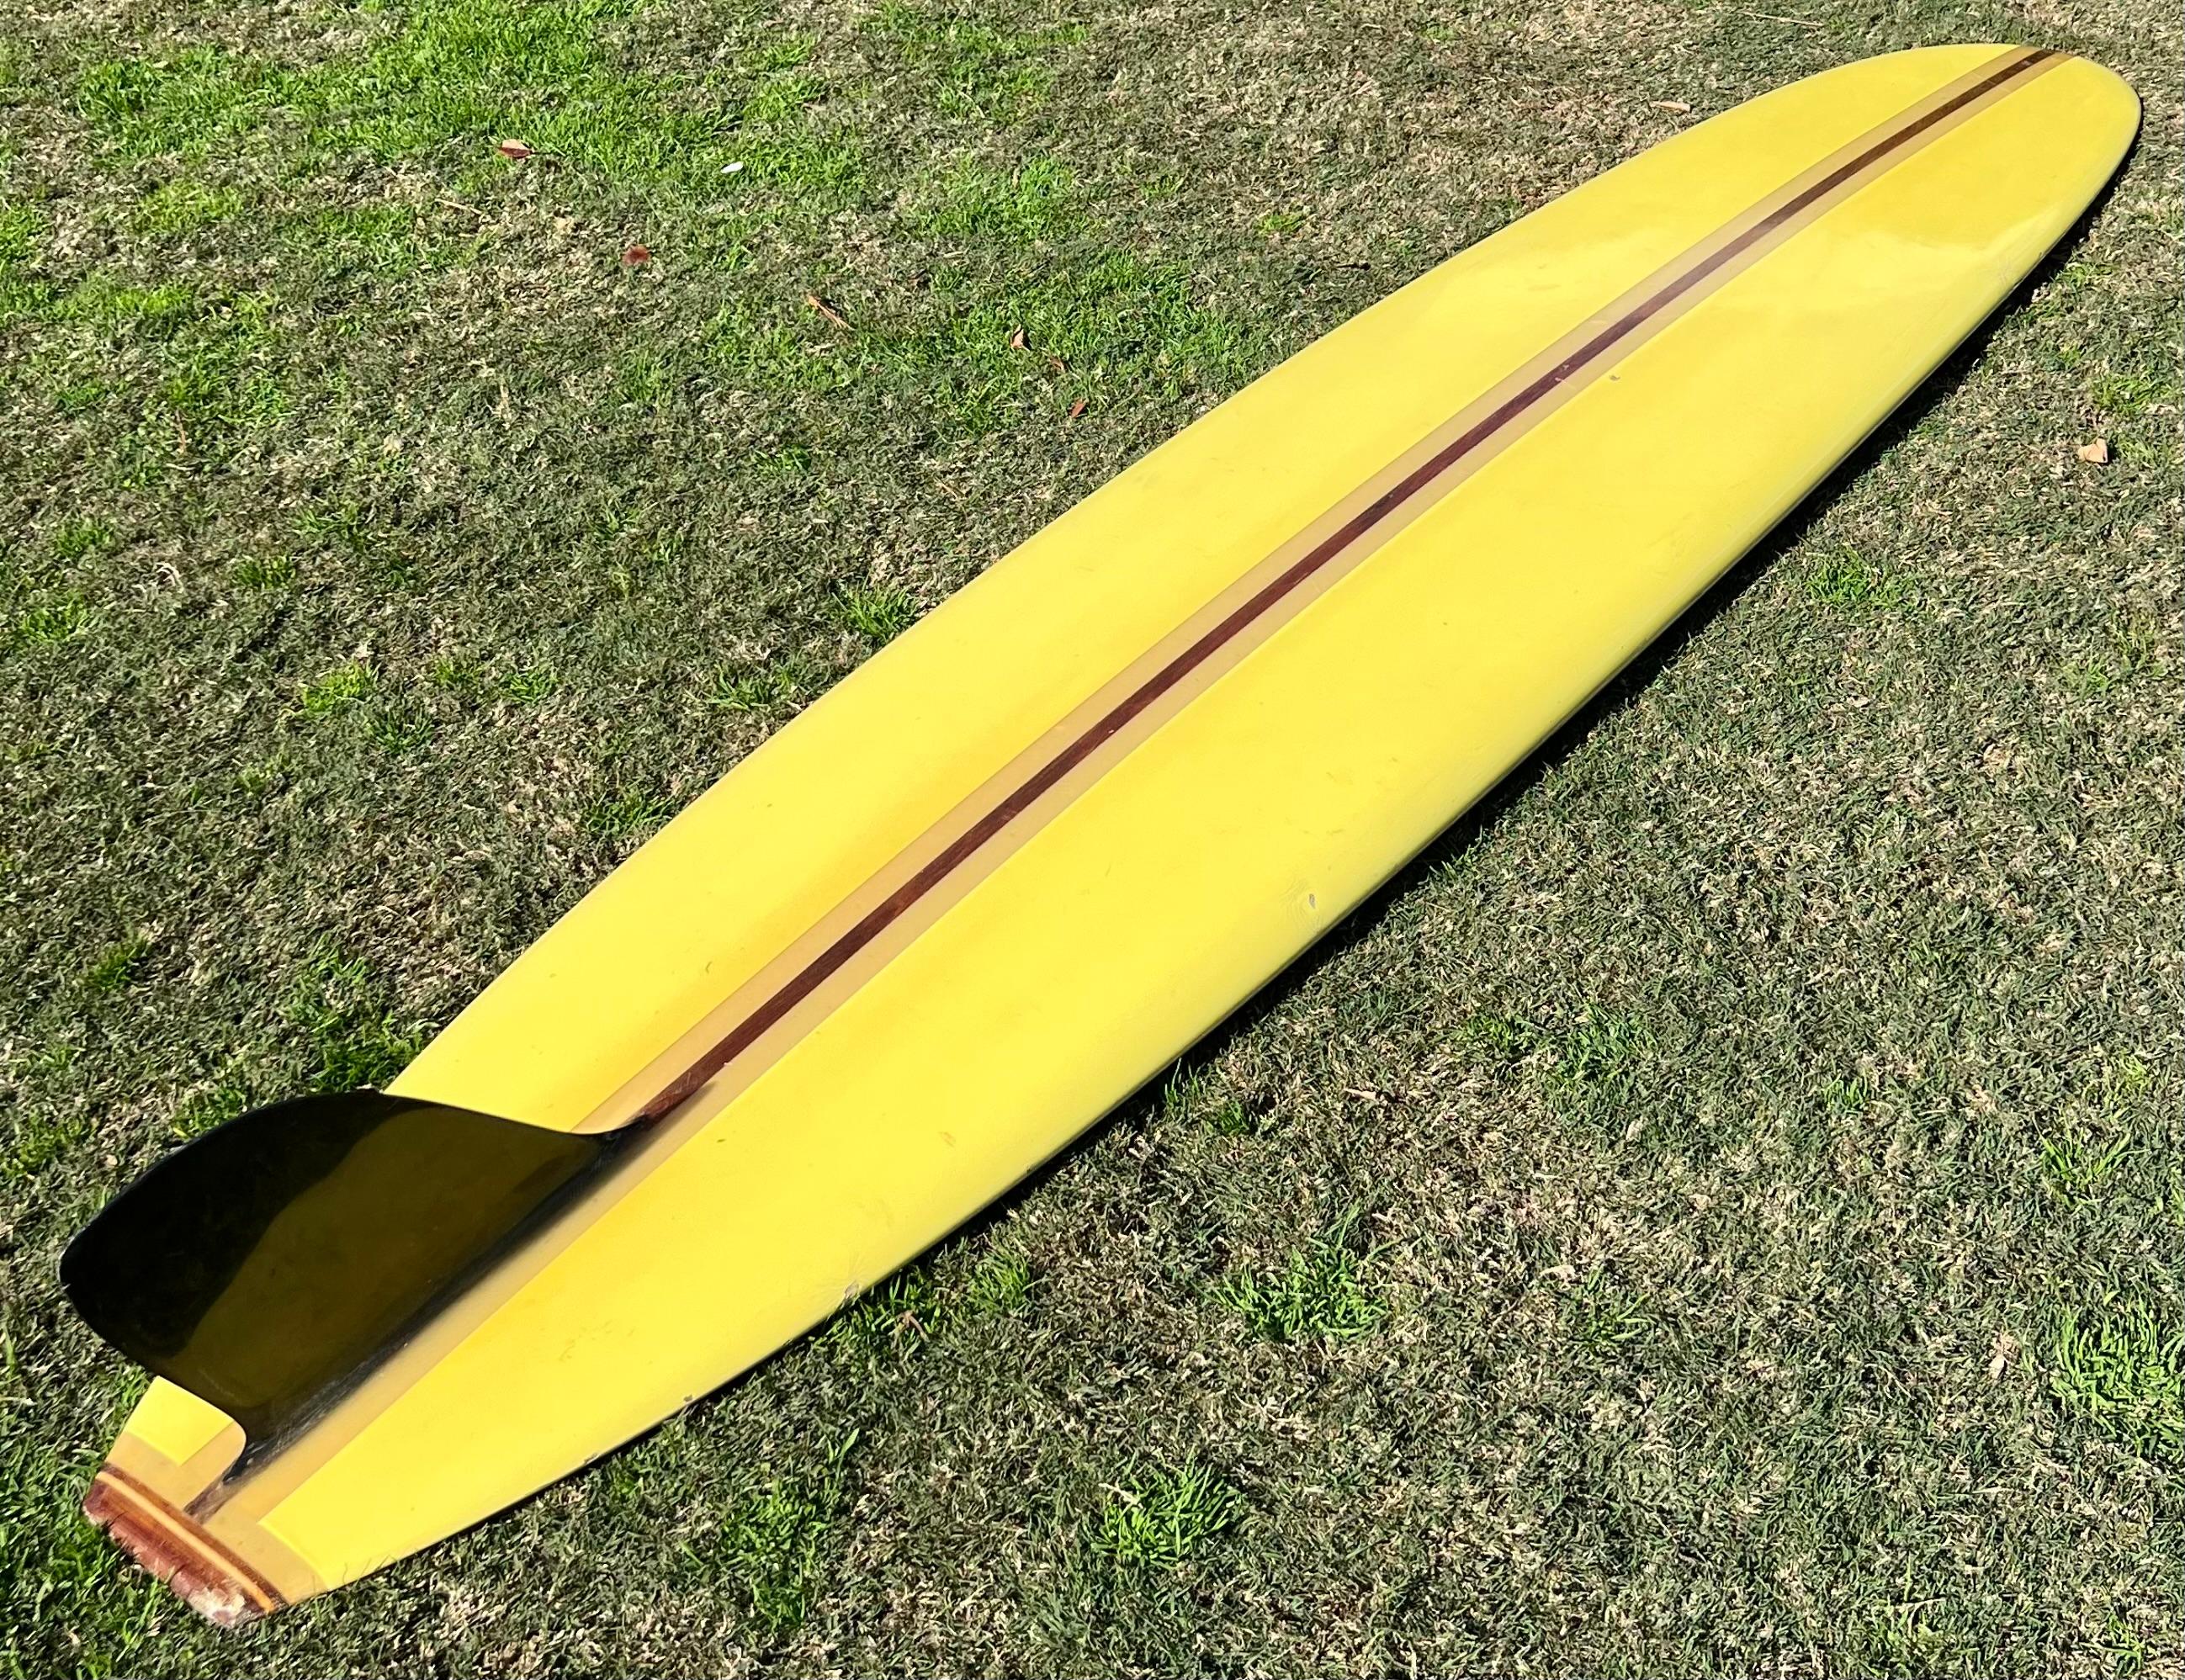 1960s Vintage Greg Noll custom longboard made in the mids 1960s. Pigment jaune vibrant avec logo atomique Greg Noll. Strigner simple en bois rouge avec aileron simple noir et tailblock 3 pièces en bois. Etat d'origine. Fabriqué sous le label Revere